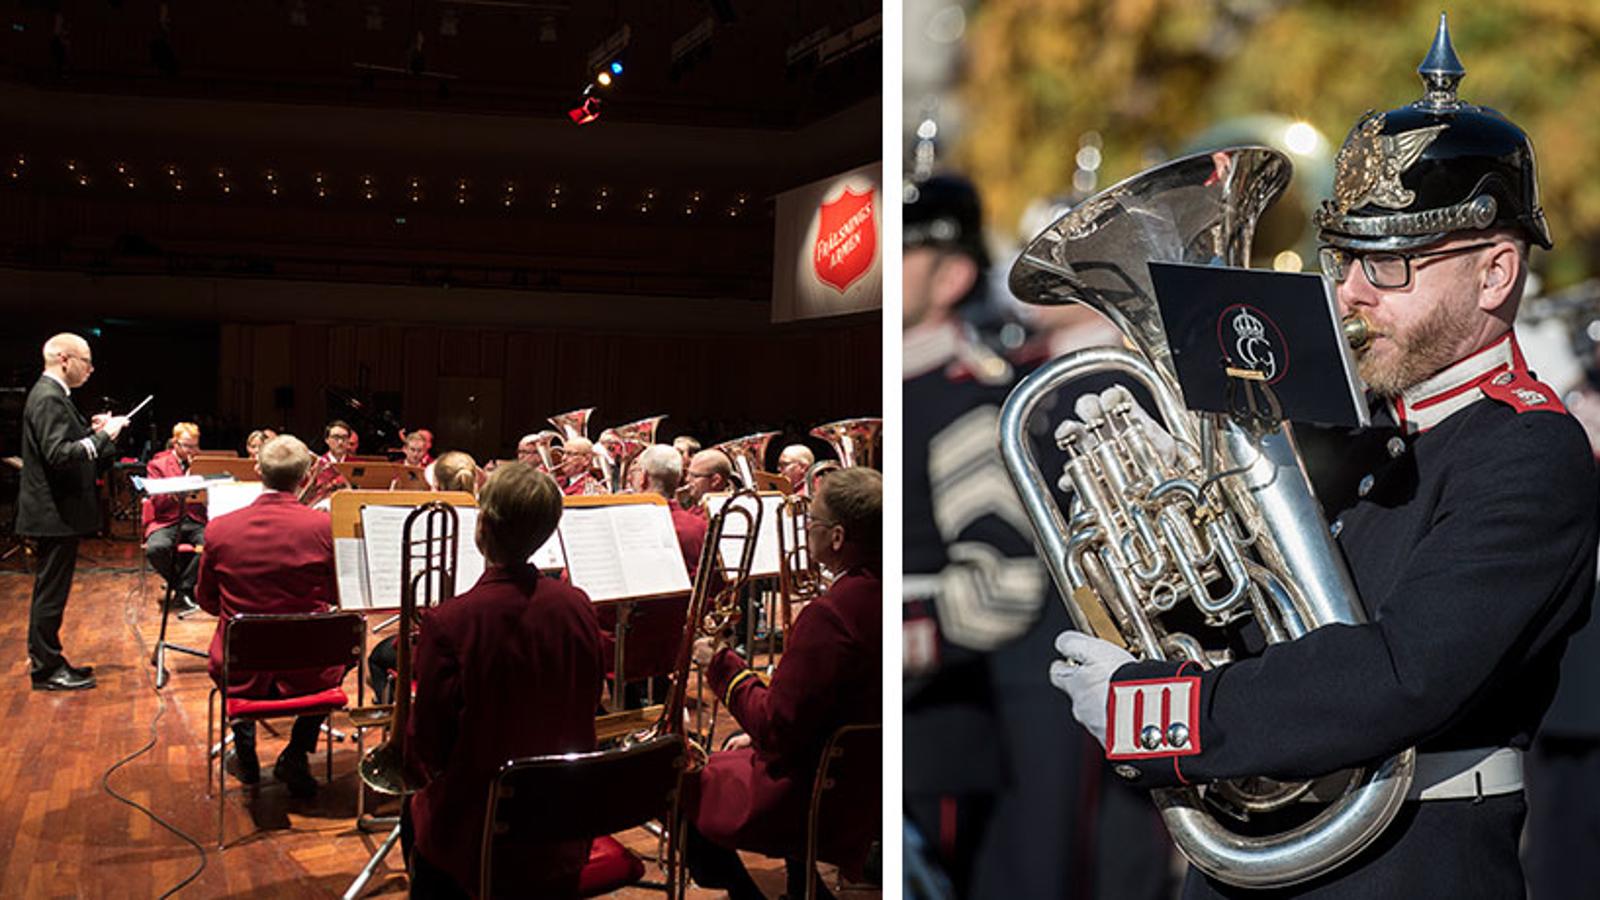 Till vänster: Ryggtavlorna på Frälsningsarméns ensemble, och till vänster står en dirigent. Till höger: En man i soldatuniform som spelar bastuba.